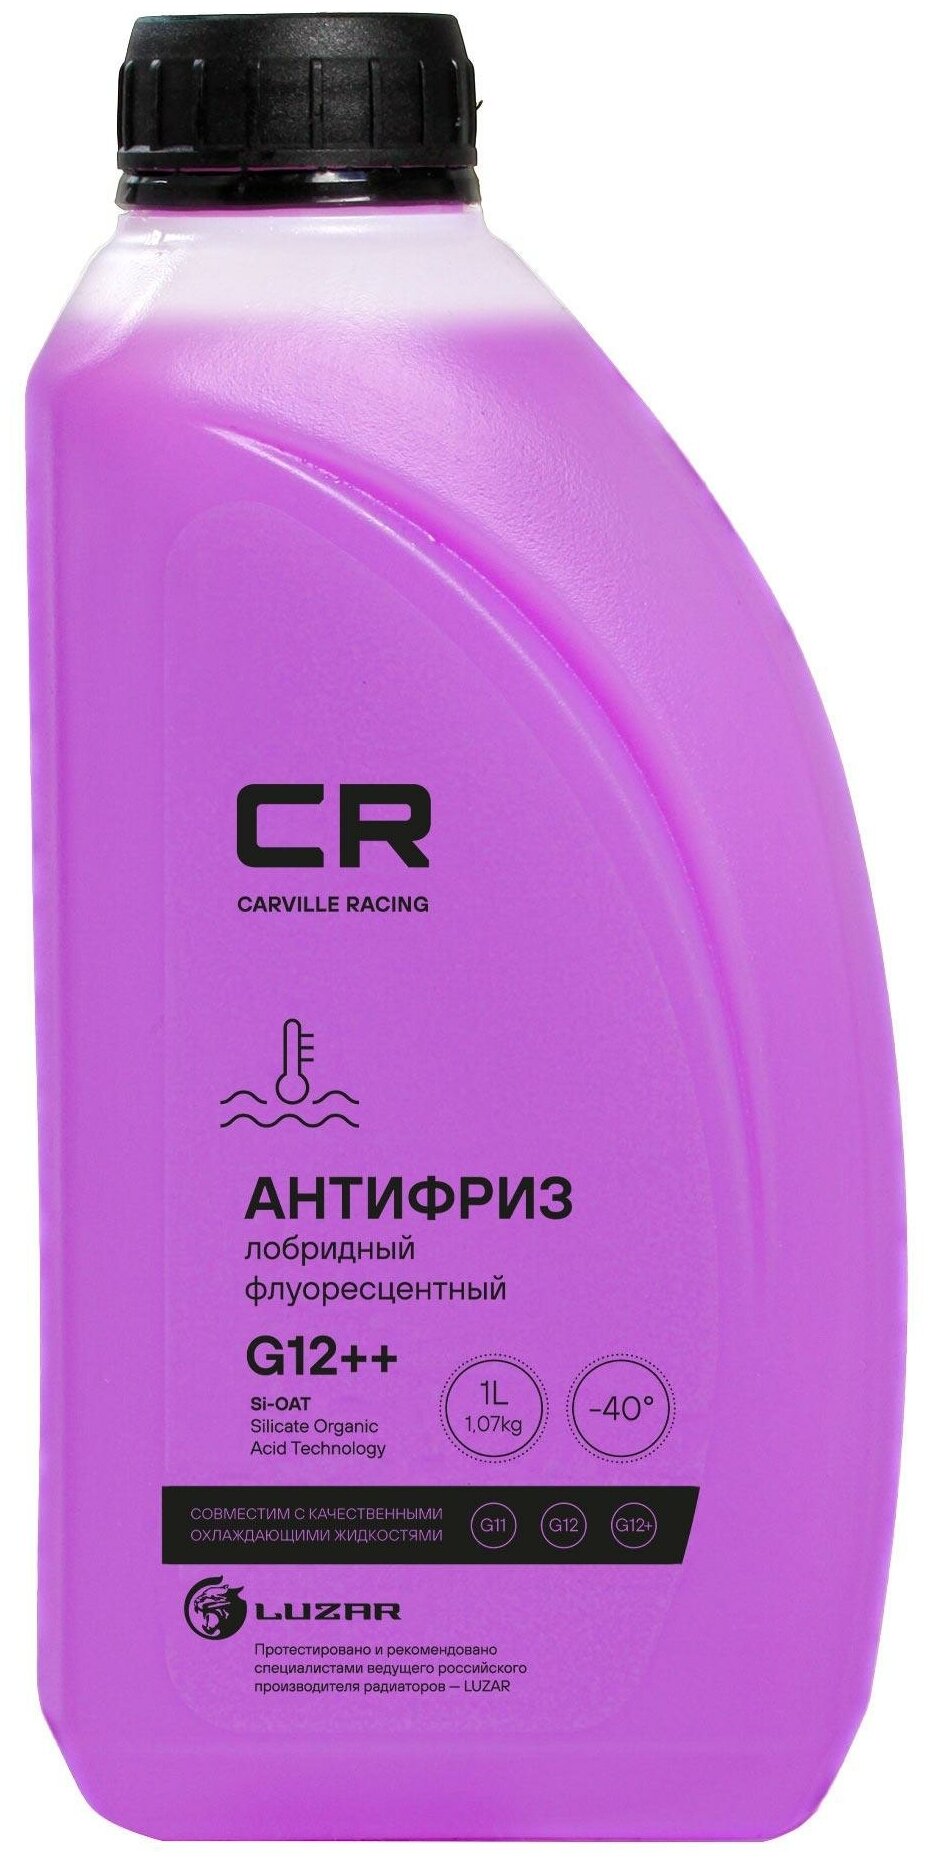 Антифриз CR лобридный флуор. -40°С, Si-OAT, G12++, фиолет, готовый, 1л/1.07кг (L2018001)